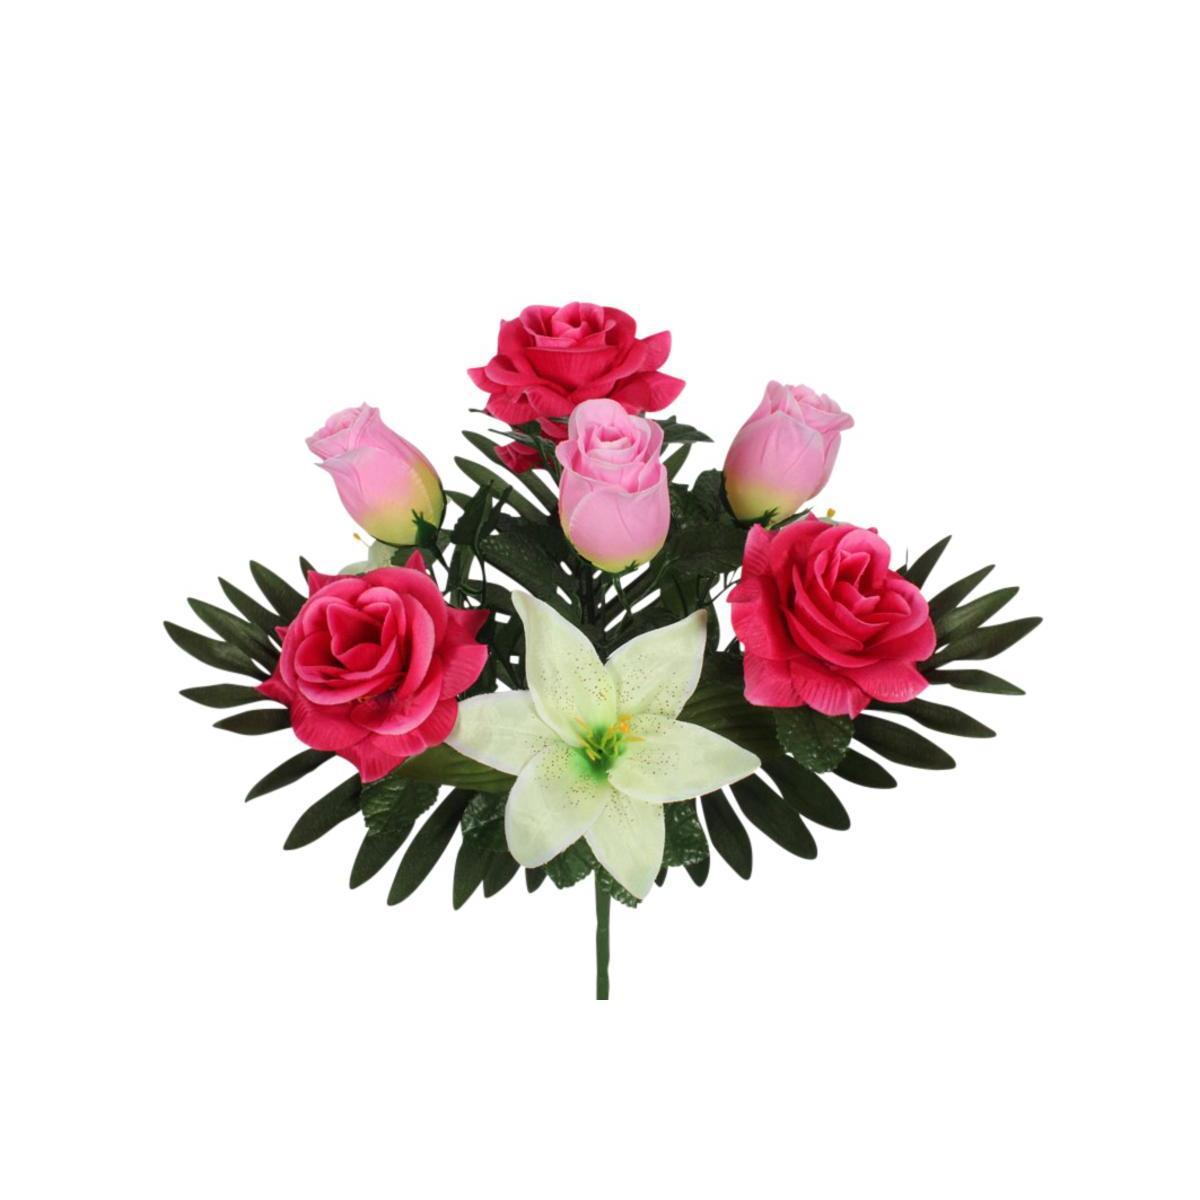 Bouquet de roses et de lys - 3 assortiments